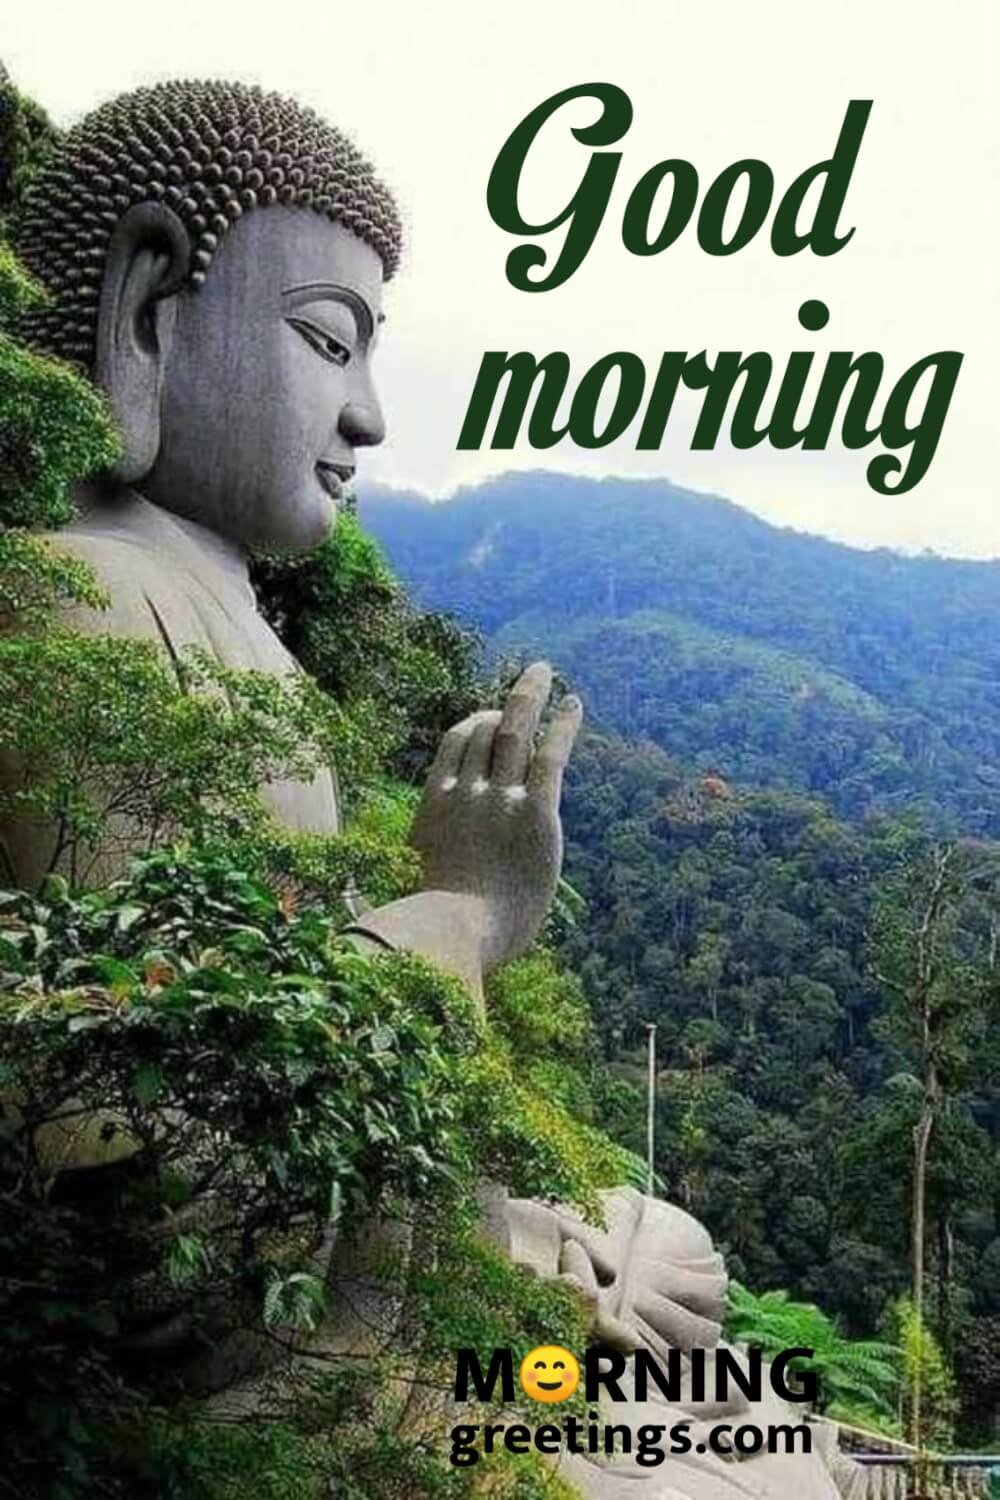 Good Morning Buddha Images